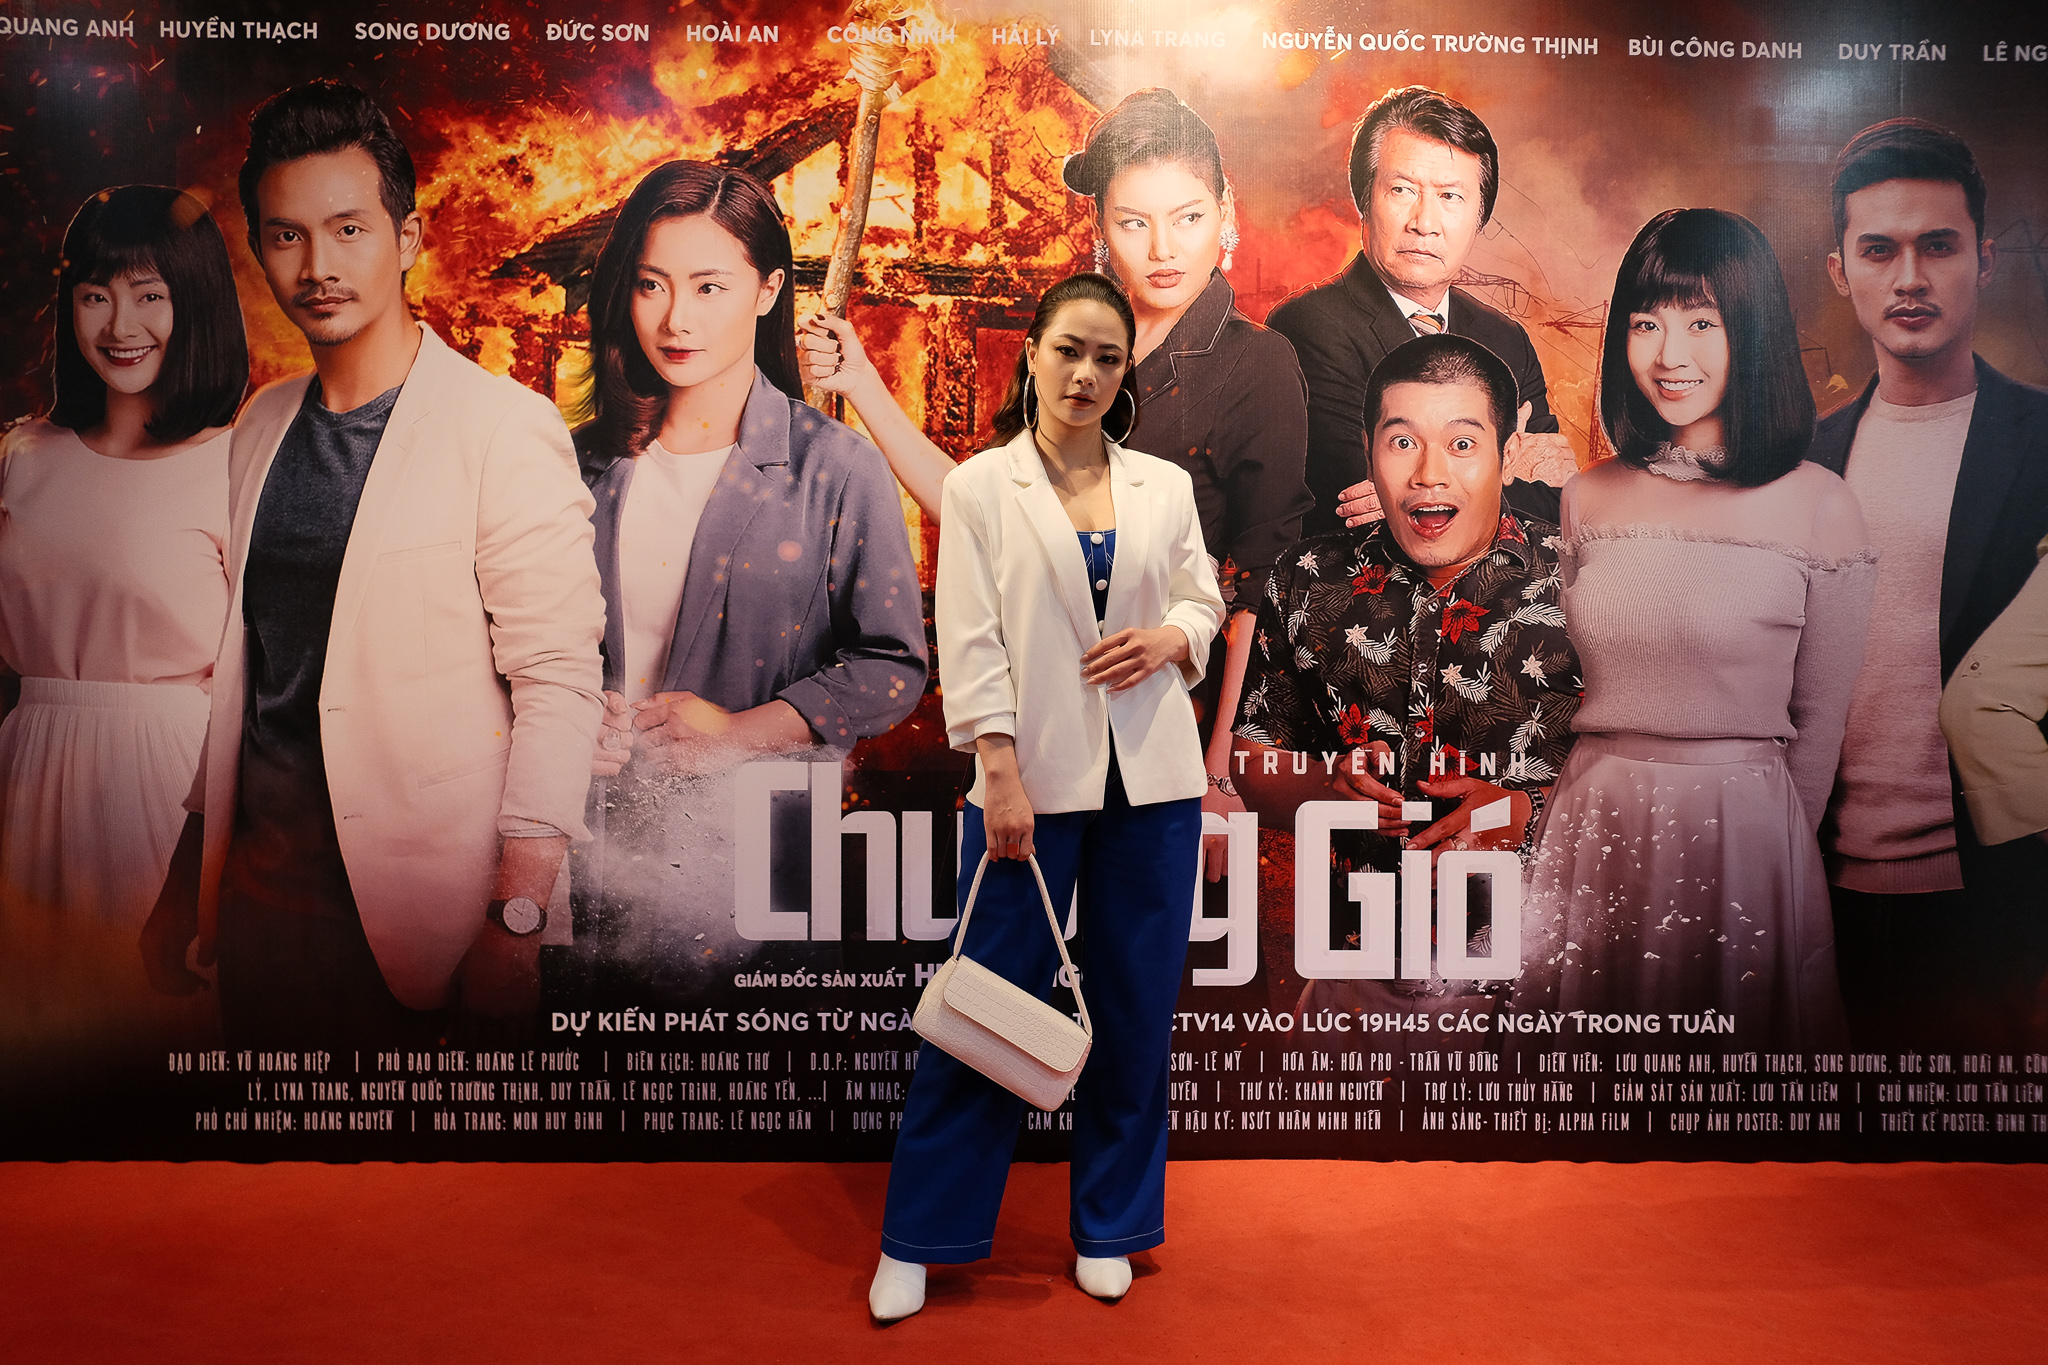 Hot girl Huyền Thạch một mình đóng 2 vai trong phim mới - ảnh 1